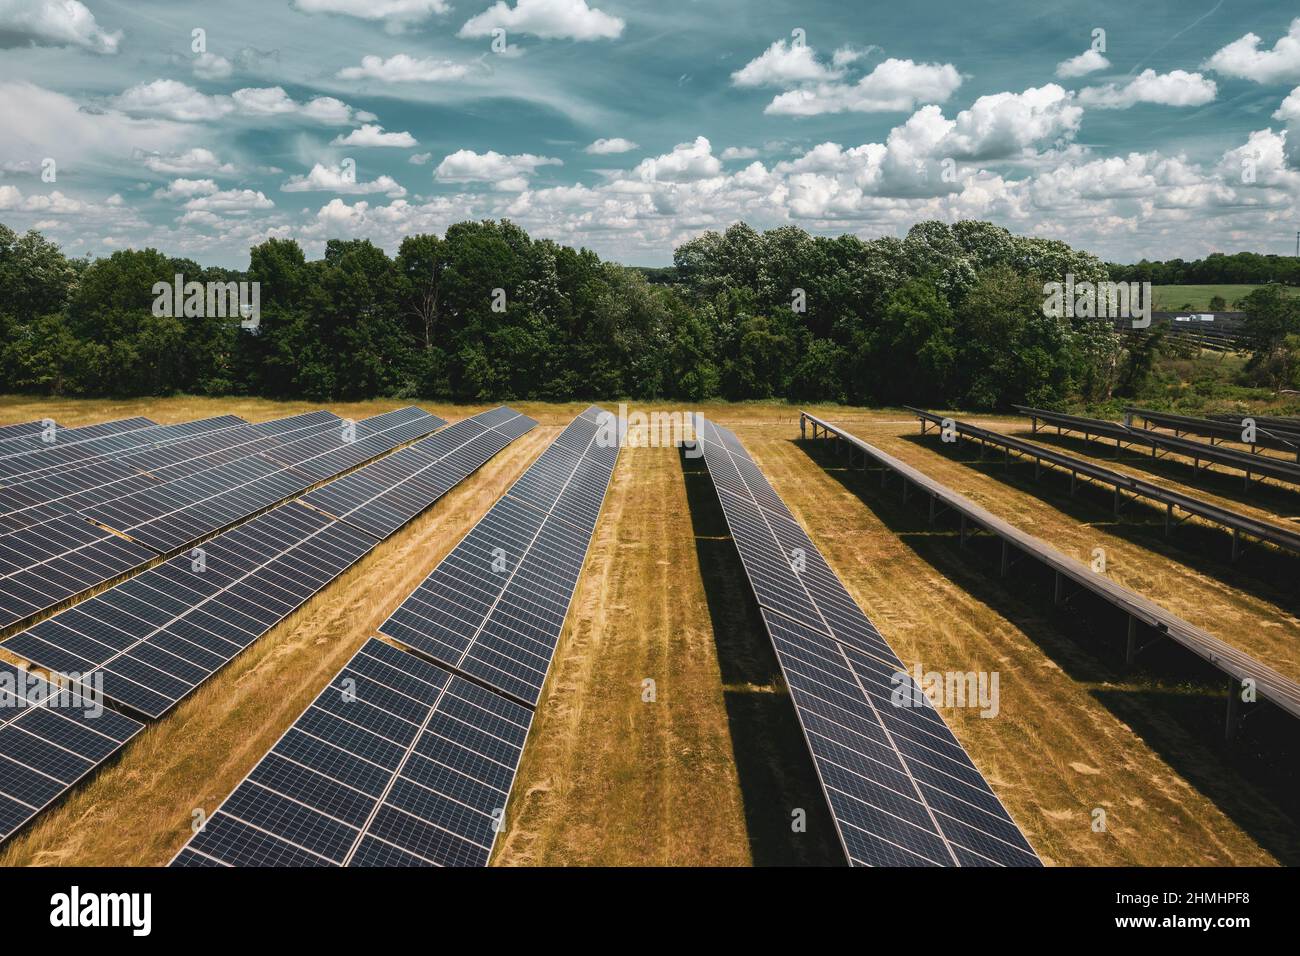 La centrale solaire de Turrill, propriété de DTE Energy, fournit de l'énergie renouvelable aux maisons de Lapeer, Michigan, États-Unis par le biais du plan MIGreenPower. Banque D'Images